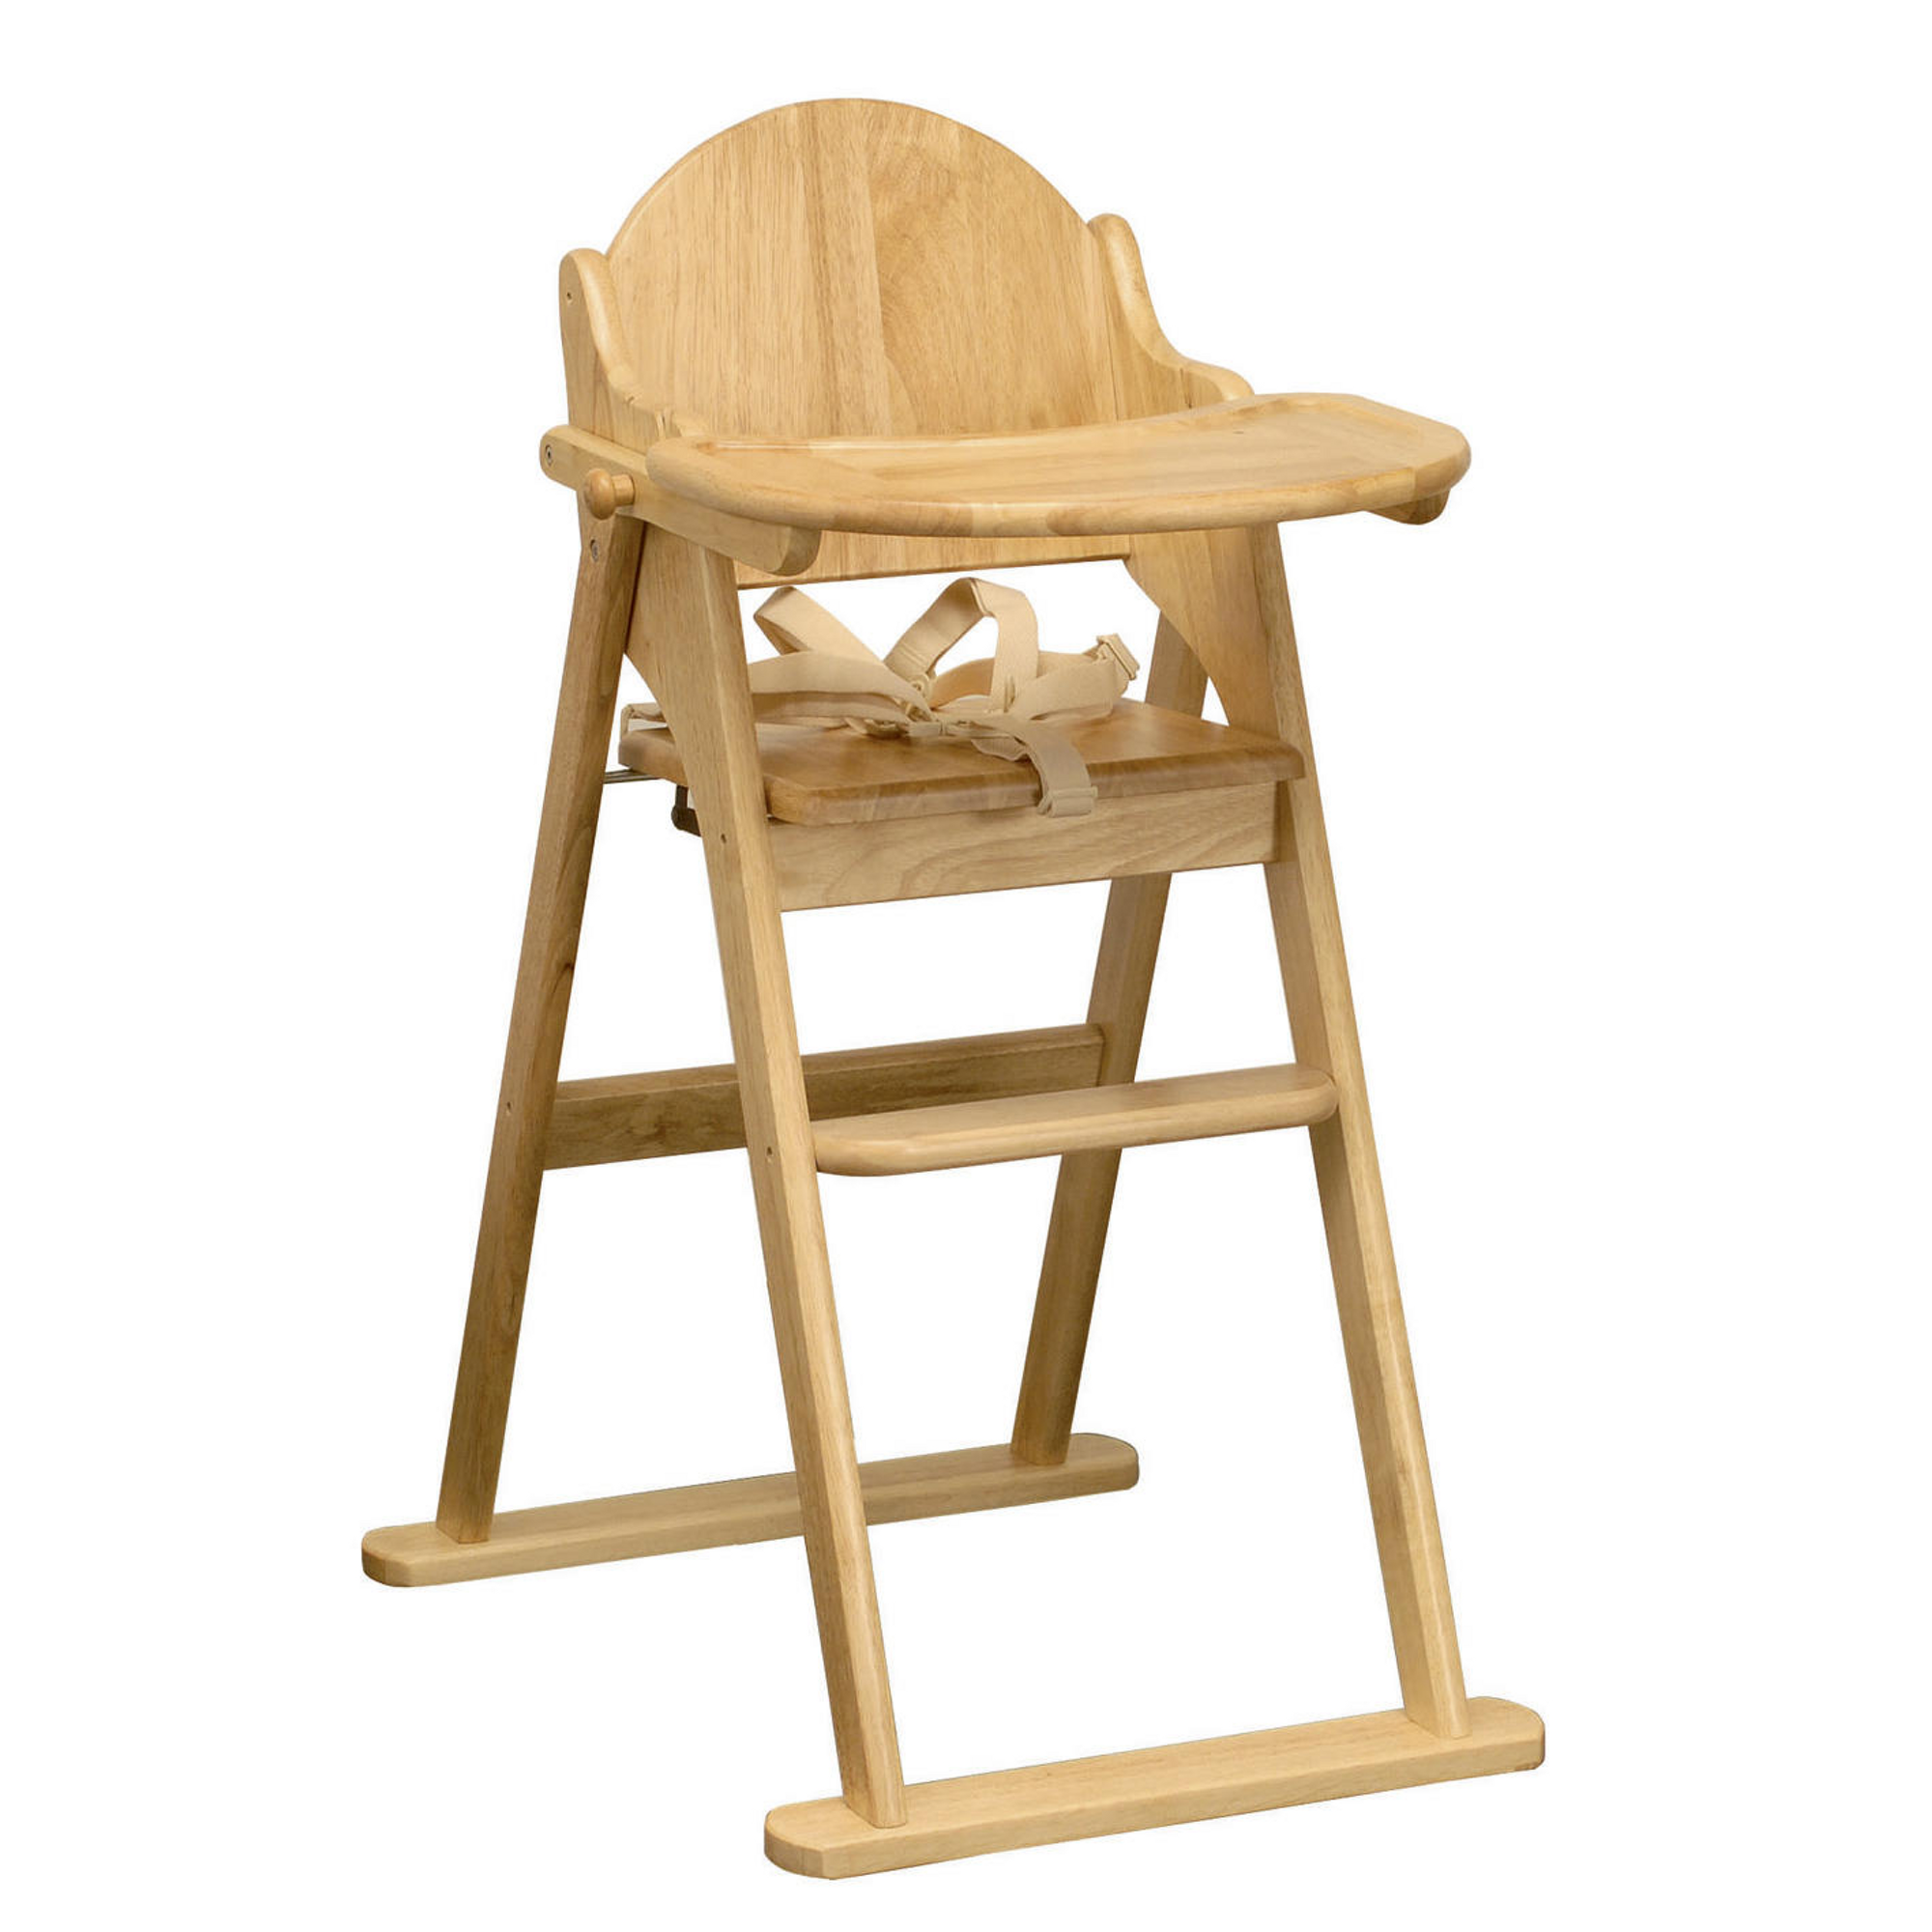 Простой деревянный стульчик для кормления